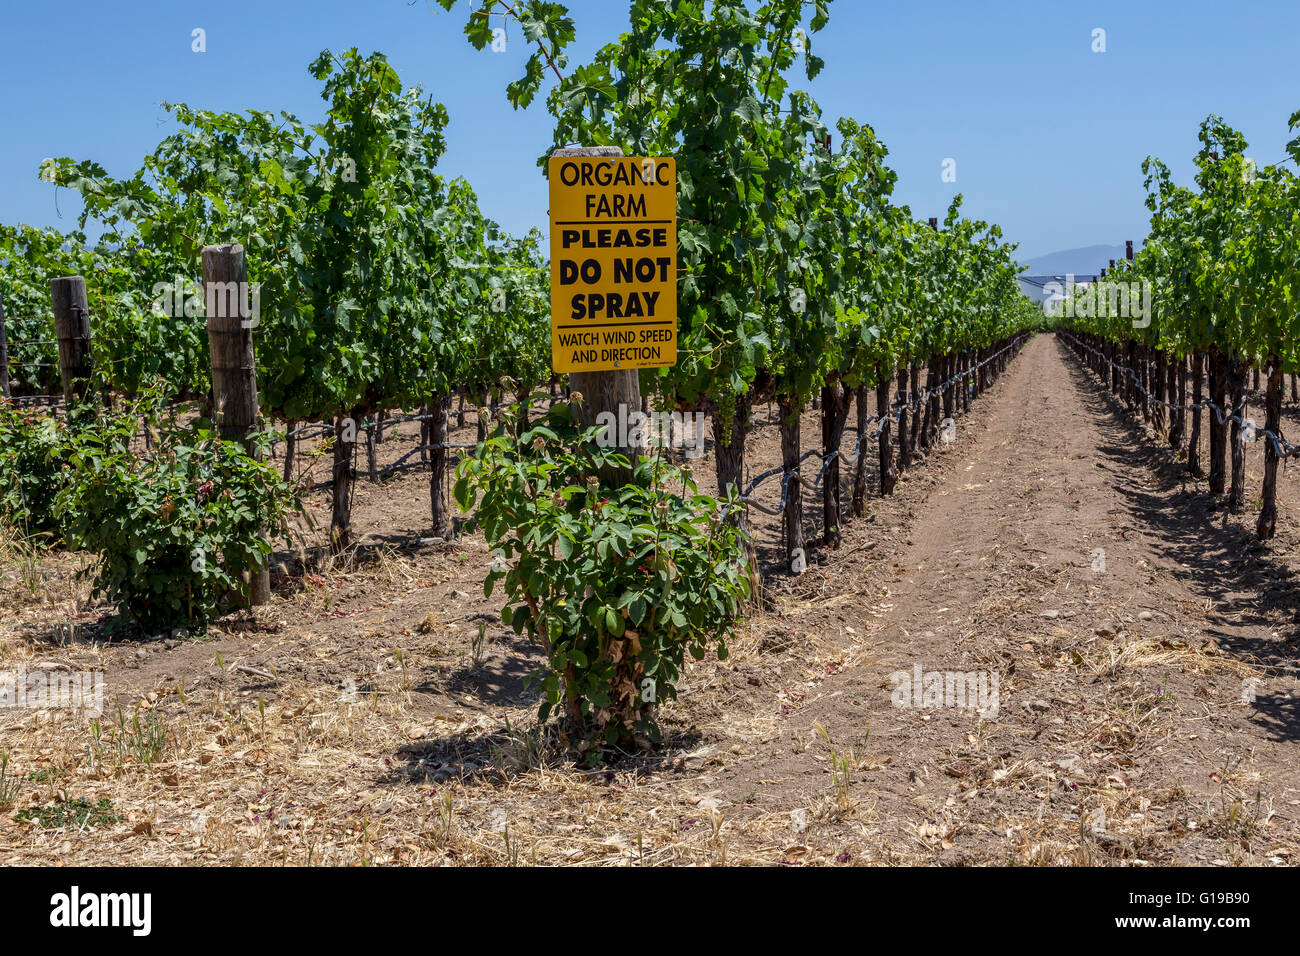 organic grapes, organic grapevines, organic grape vineyard, organic vineyard, organic farm, town of Saint Helena, Napa Valley, California Stock Photo